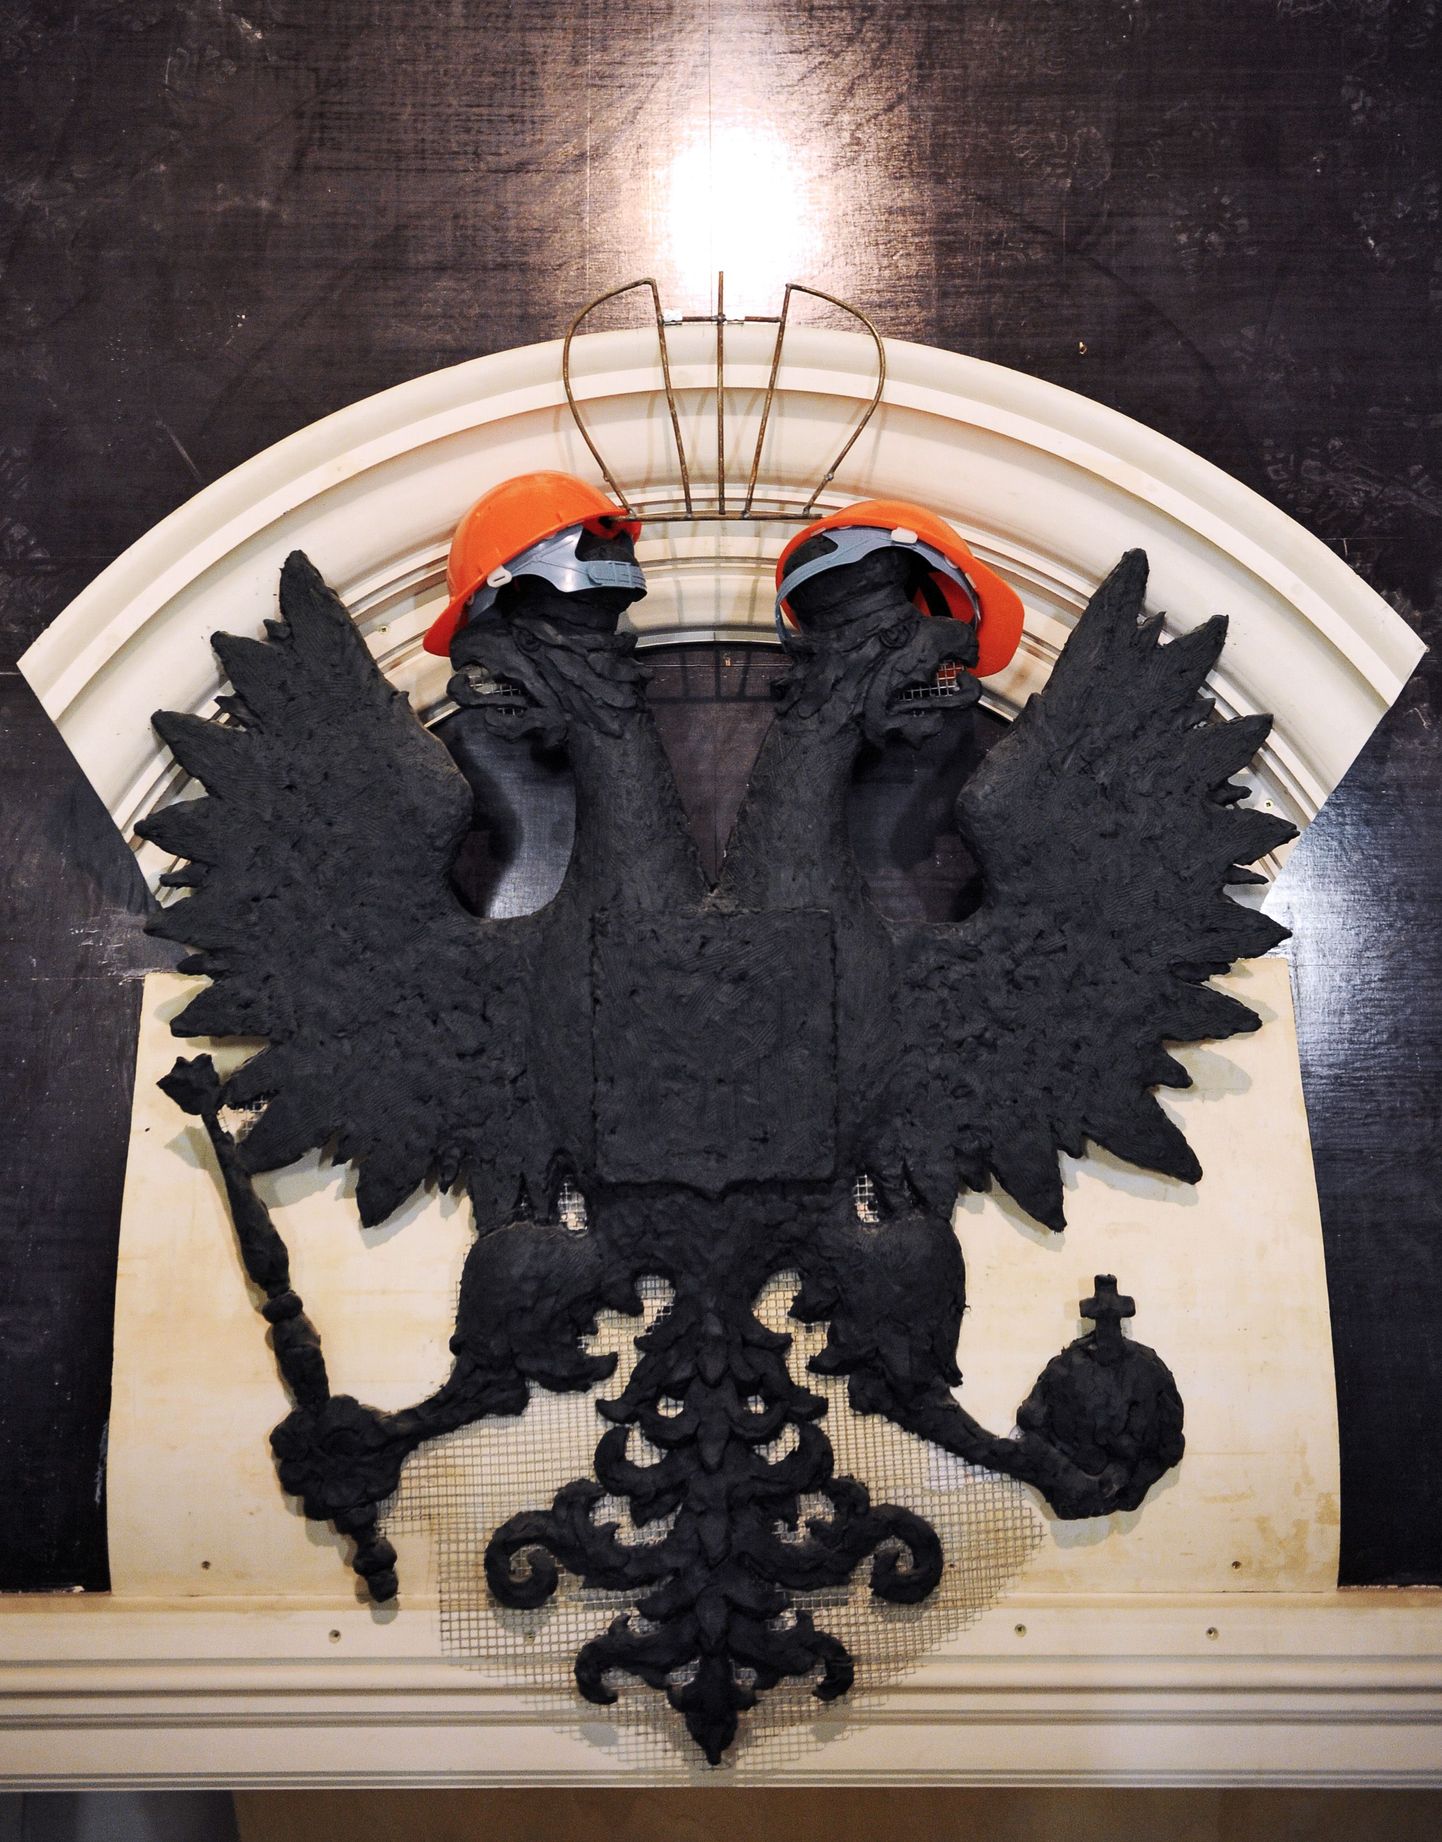 Venemaa vapil olev kahepealine kotkas on selle suurriigi üks sümboleid